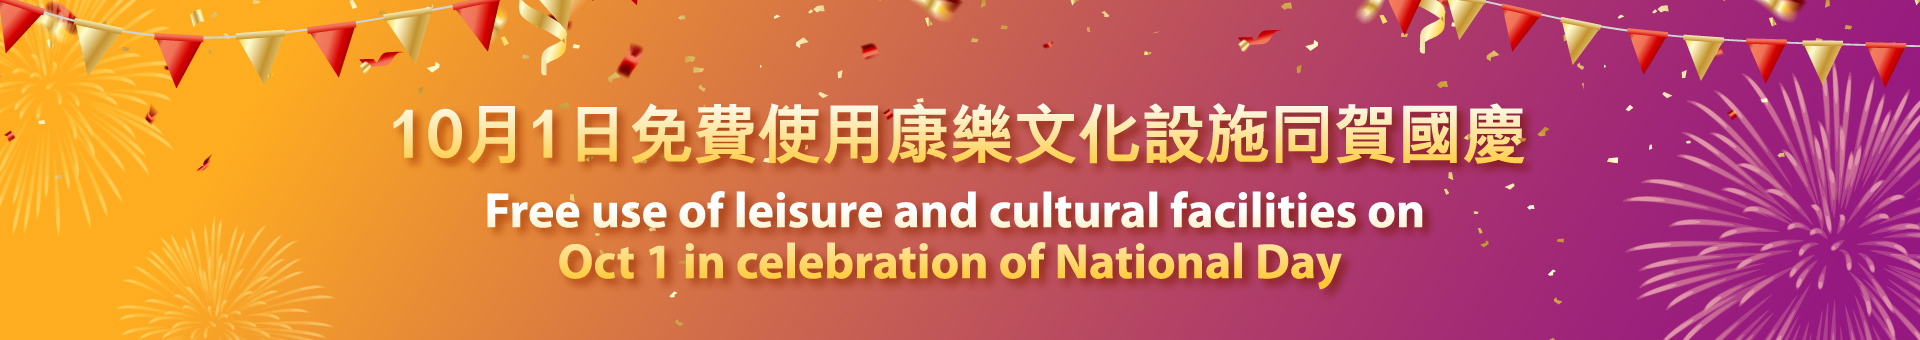 10月1日免费使用康乐文化设施同贺国庆